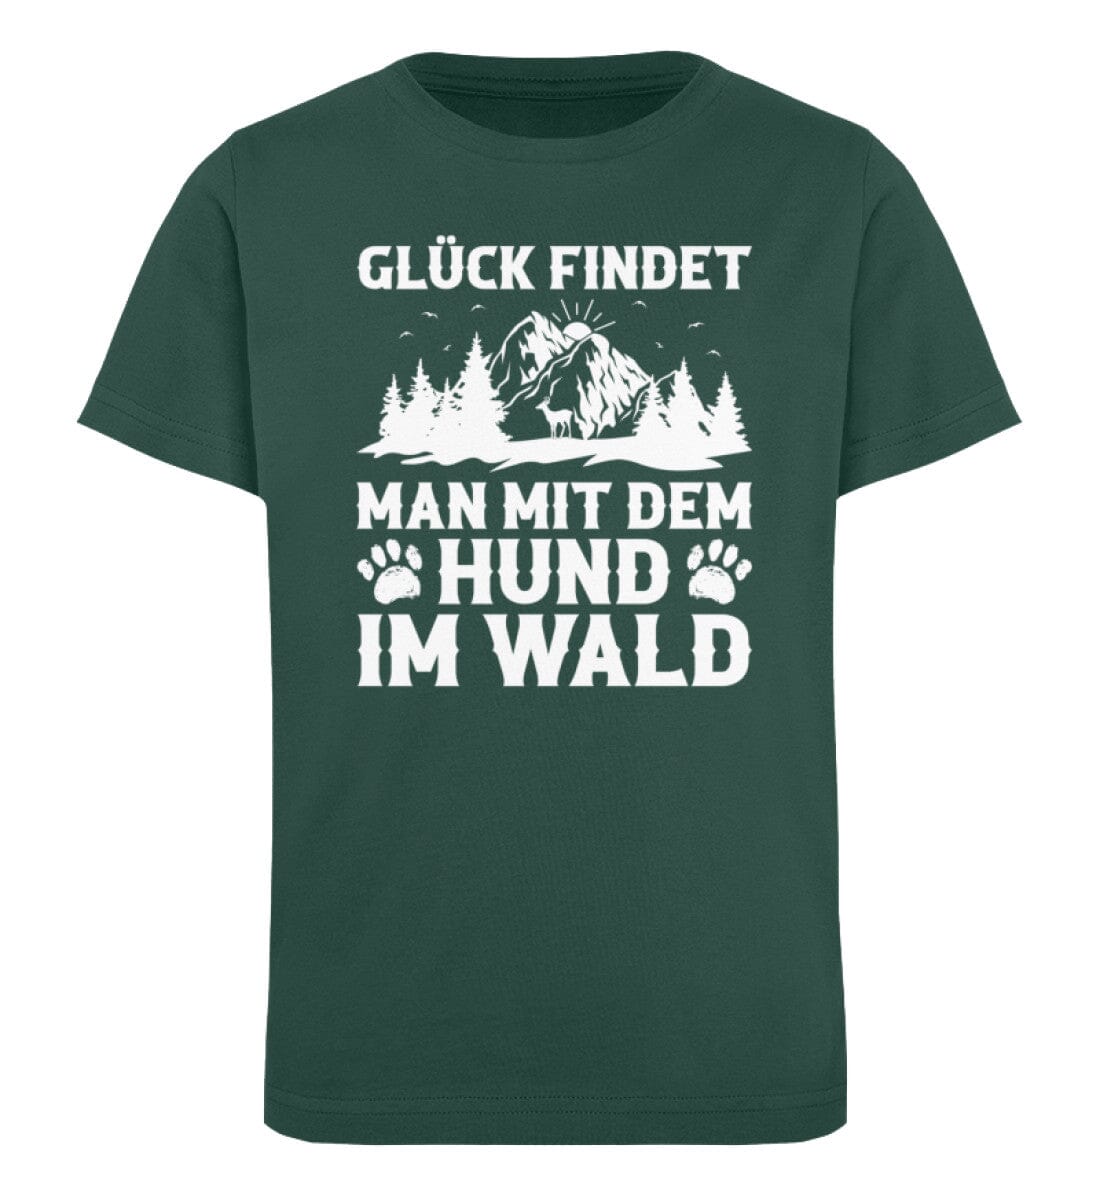 Glück findet man mit dem Hund im Wald - Kinder Bio Shirt Glazed Green 12/14 (152/164) 